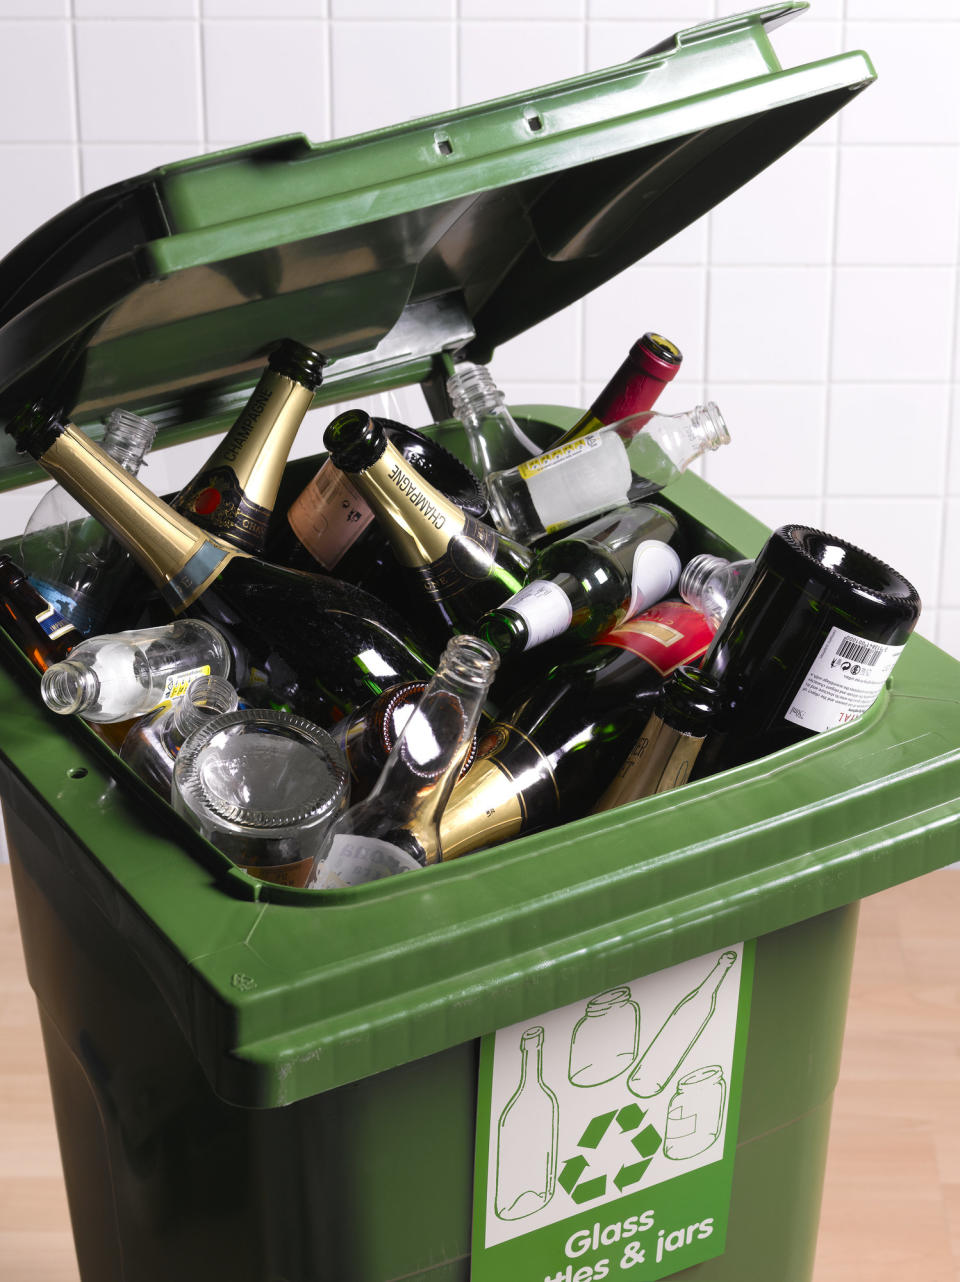 A recycling bin full of bottles